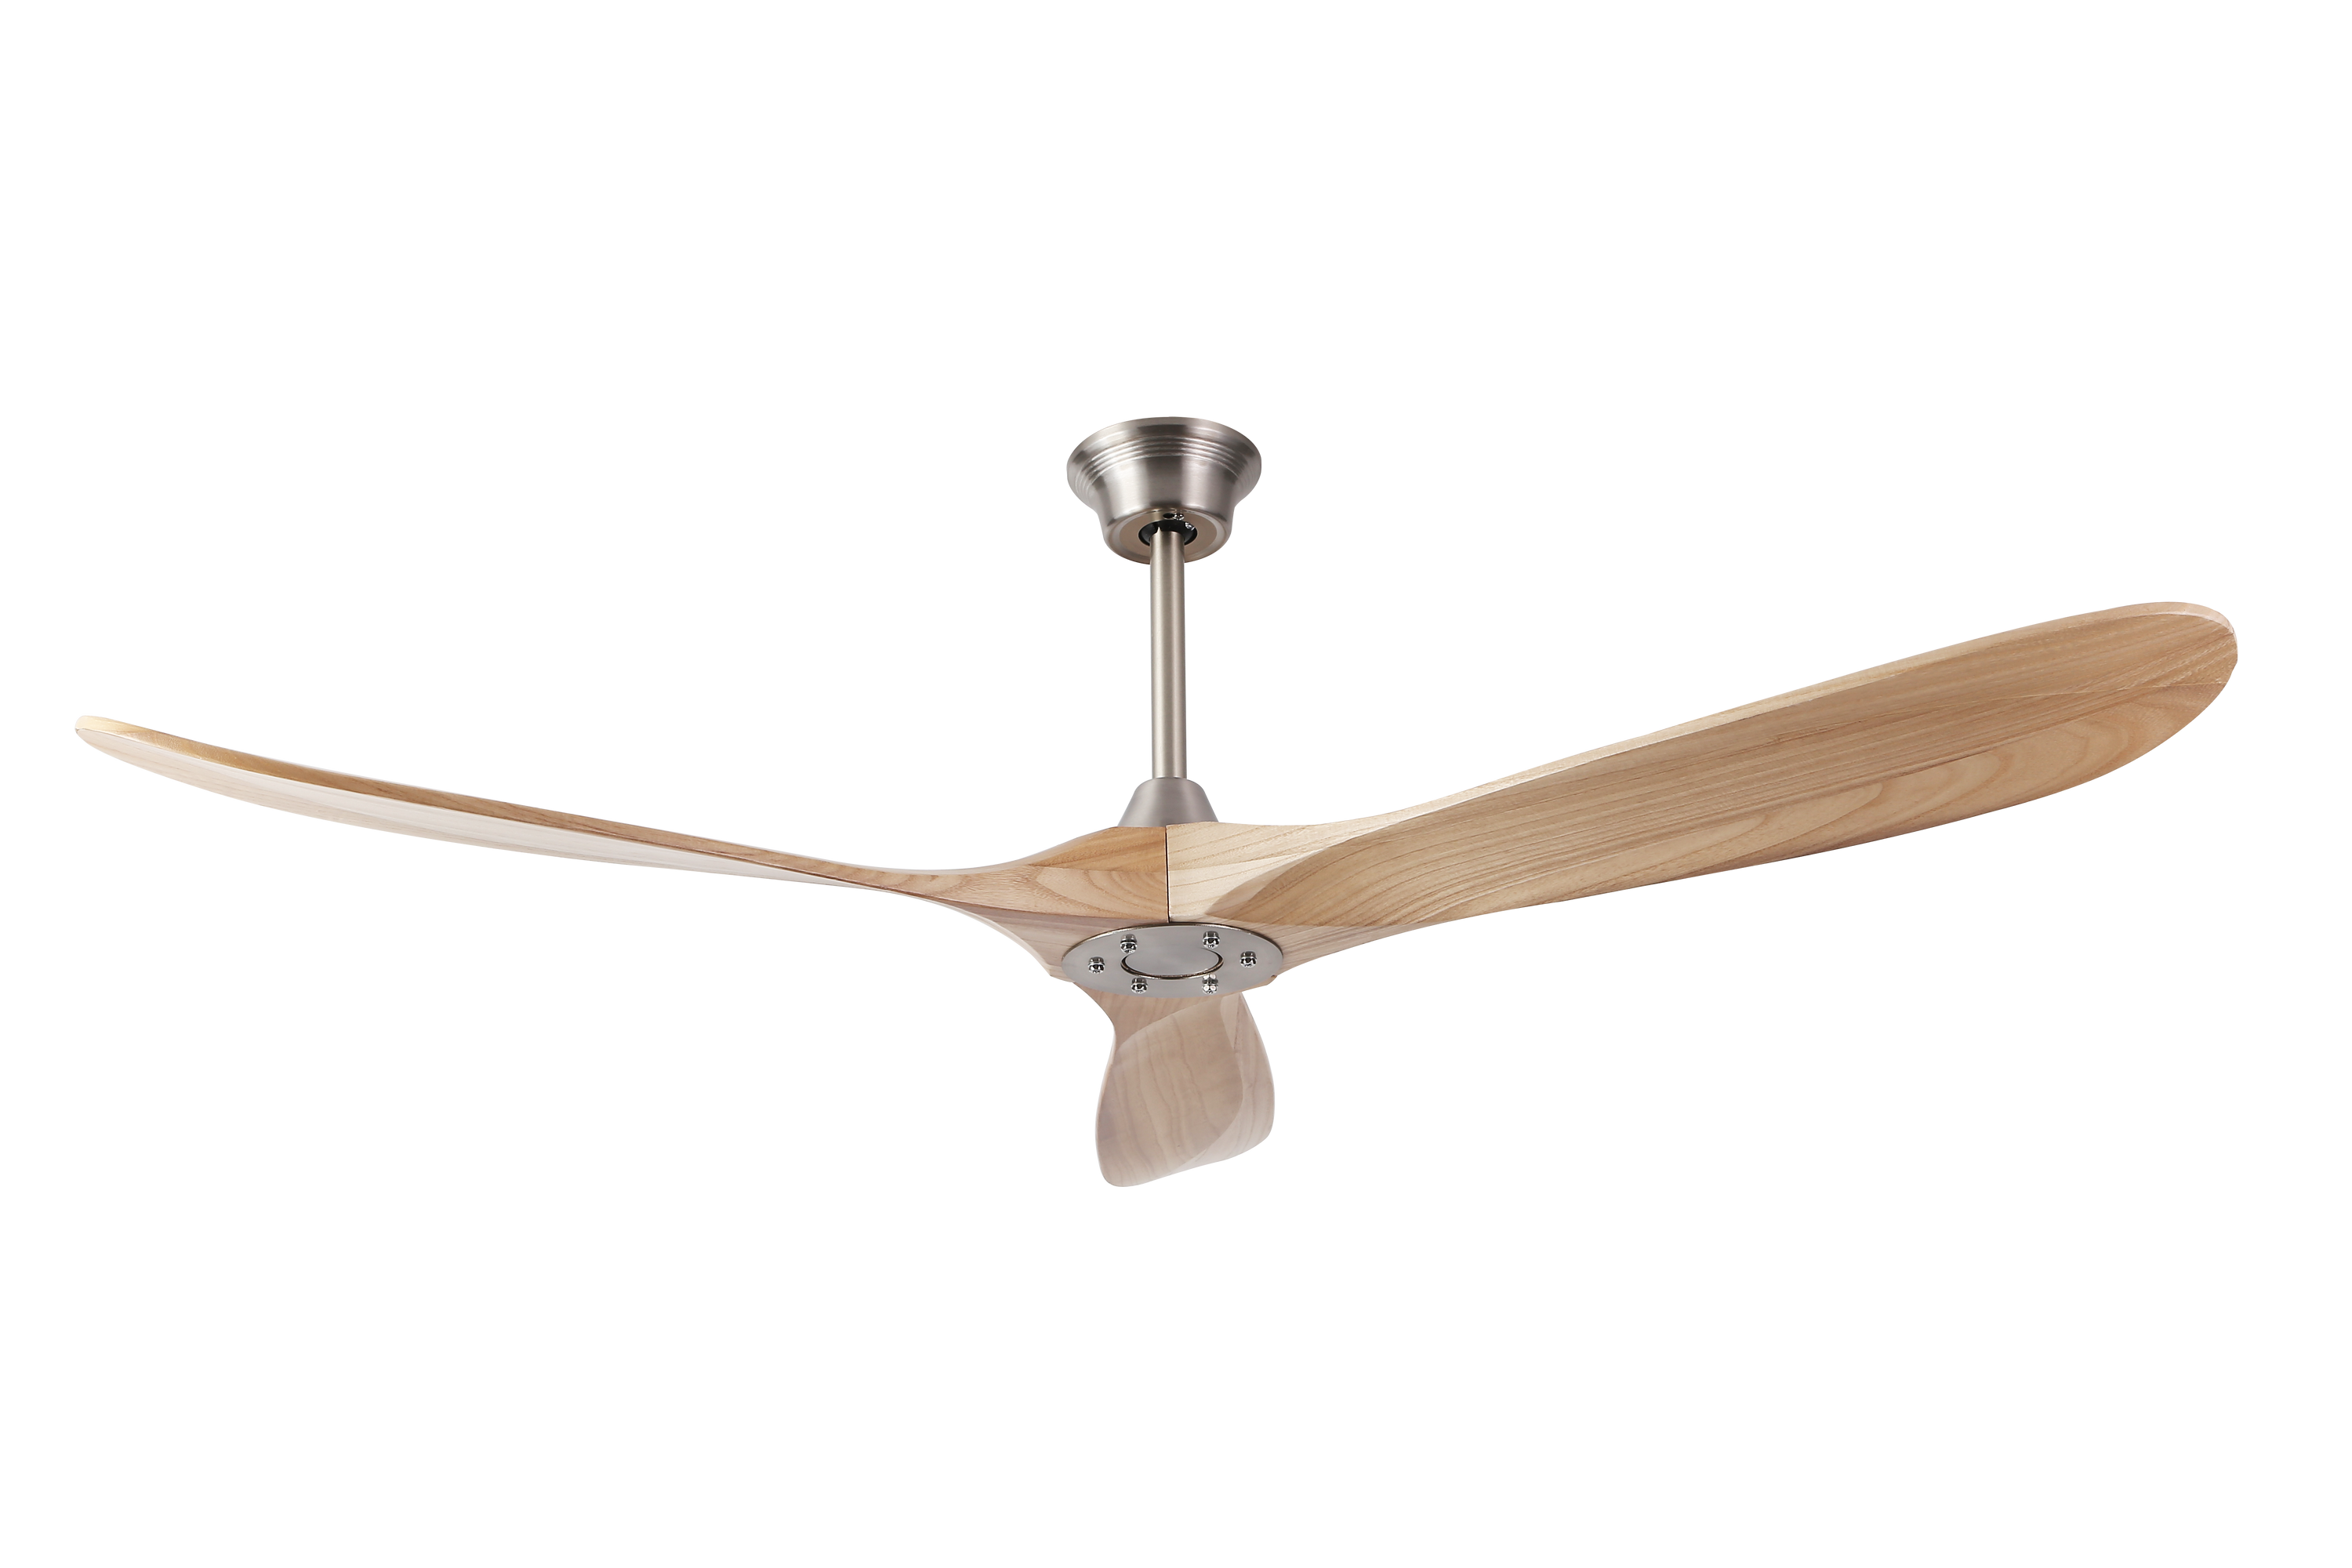 60 Inch Wood Blade Ceiling Fan by Builder Fans Co. - Satin Nickel,